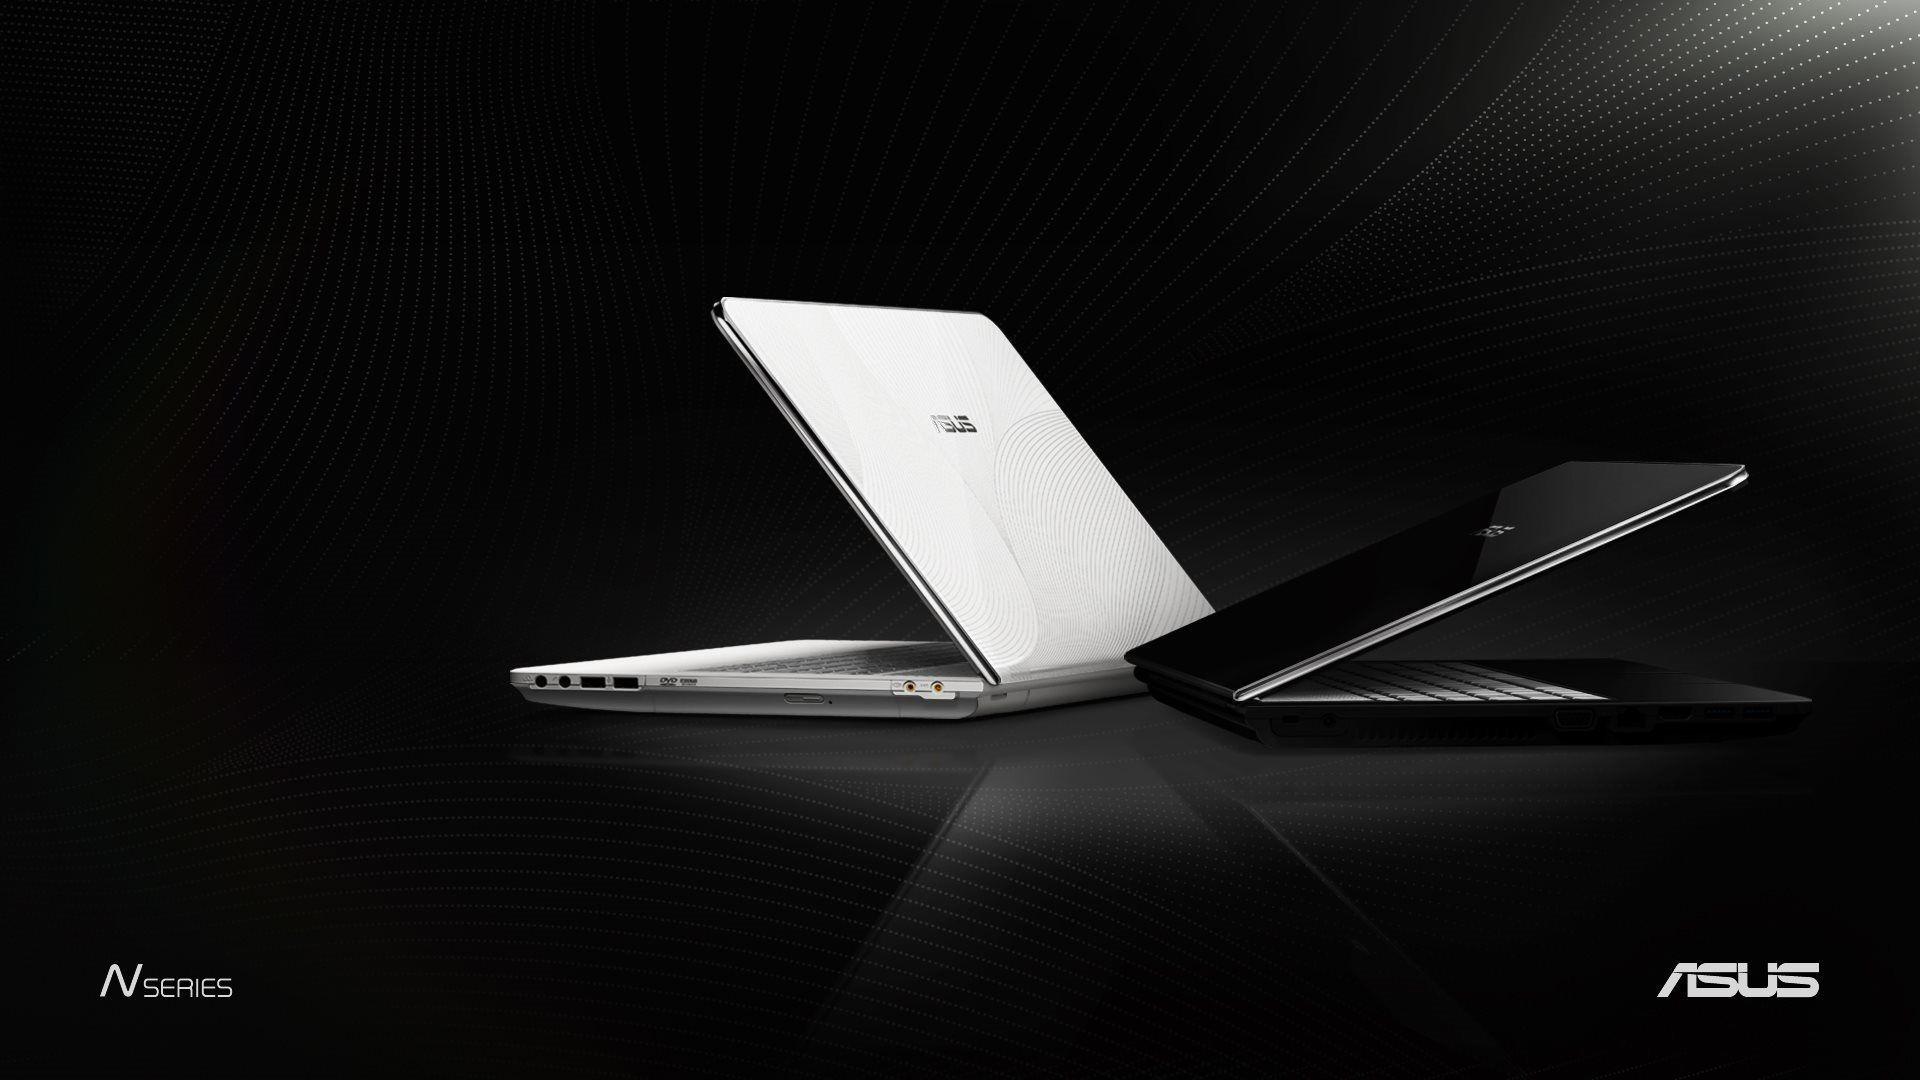 Asus Laptop. Free Wallpaper. Asus laptop